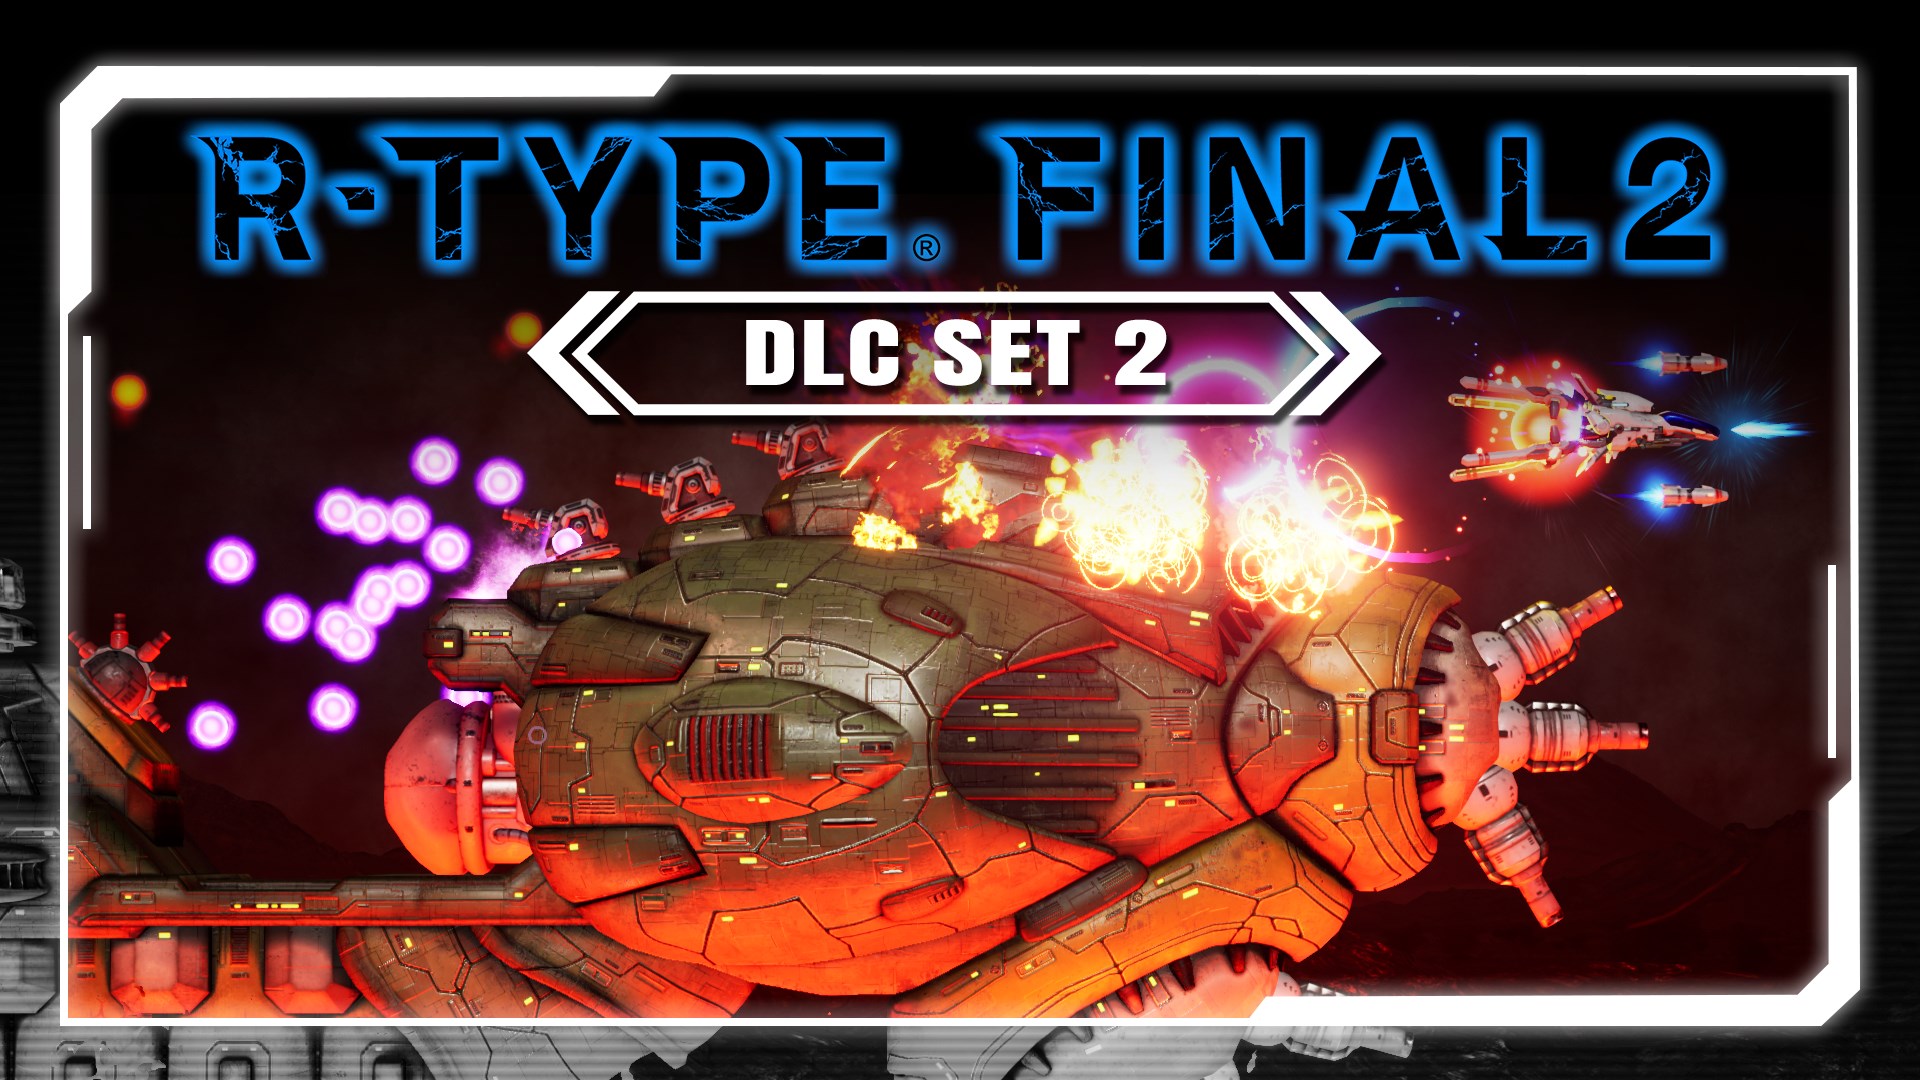 R-Type Final 2 PC: DLC Set 2